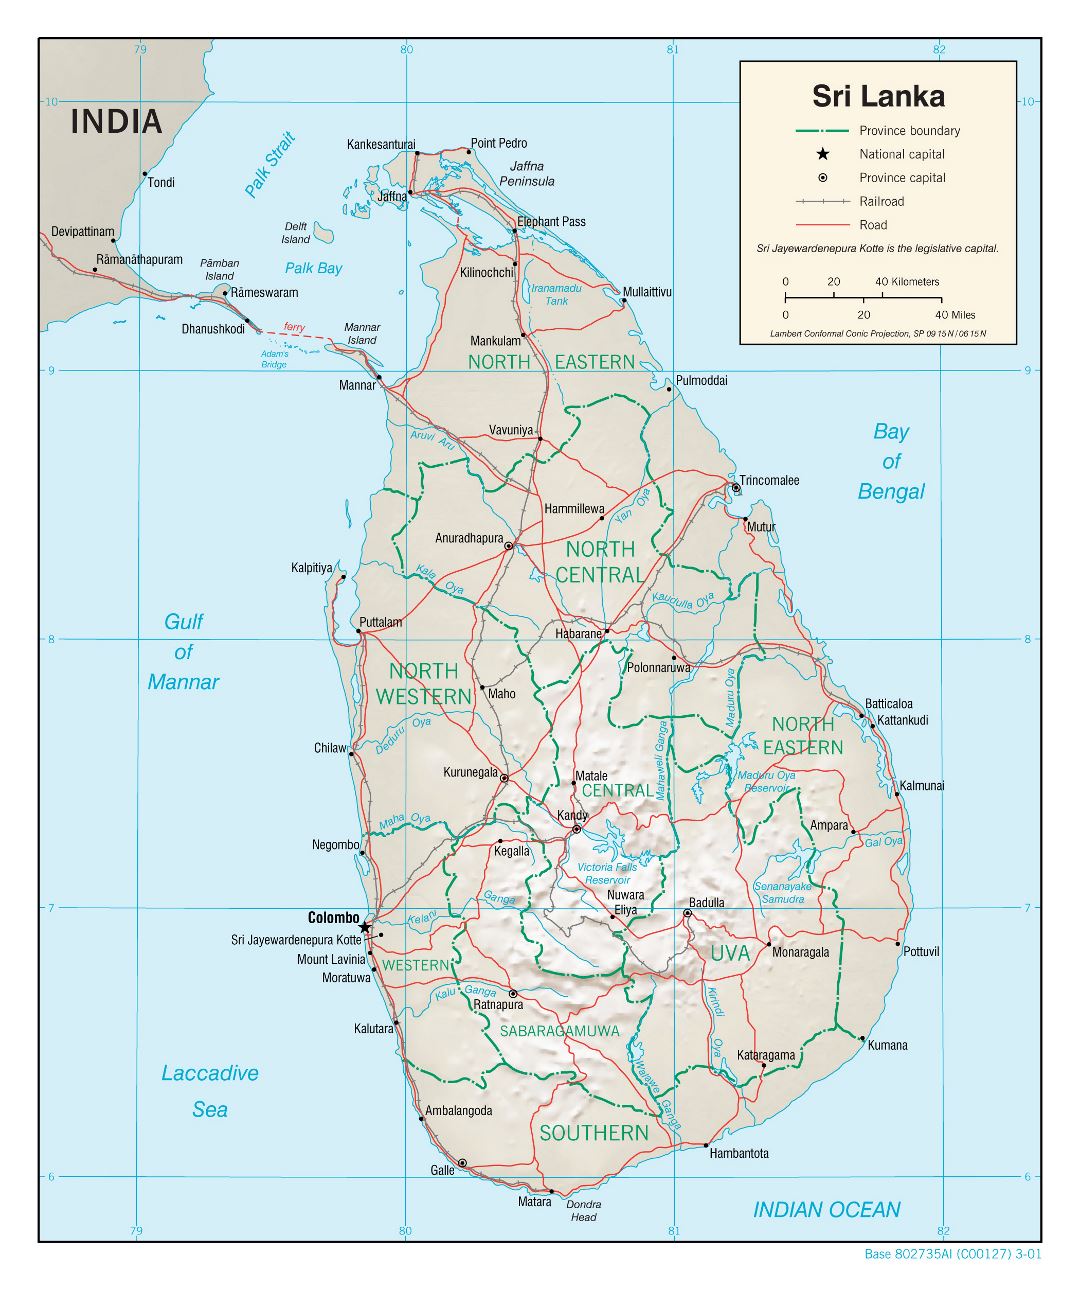 Большая политическая и административная карта Шри-Ланки с рельефом, дорогами, железными дорогами и крупными городами - 2001